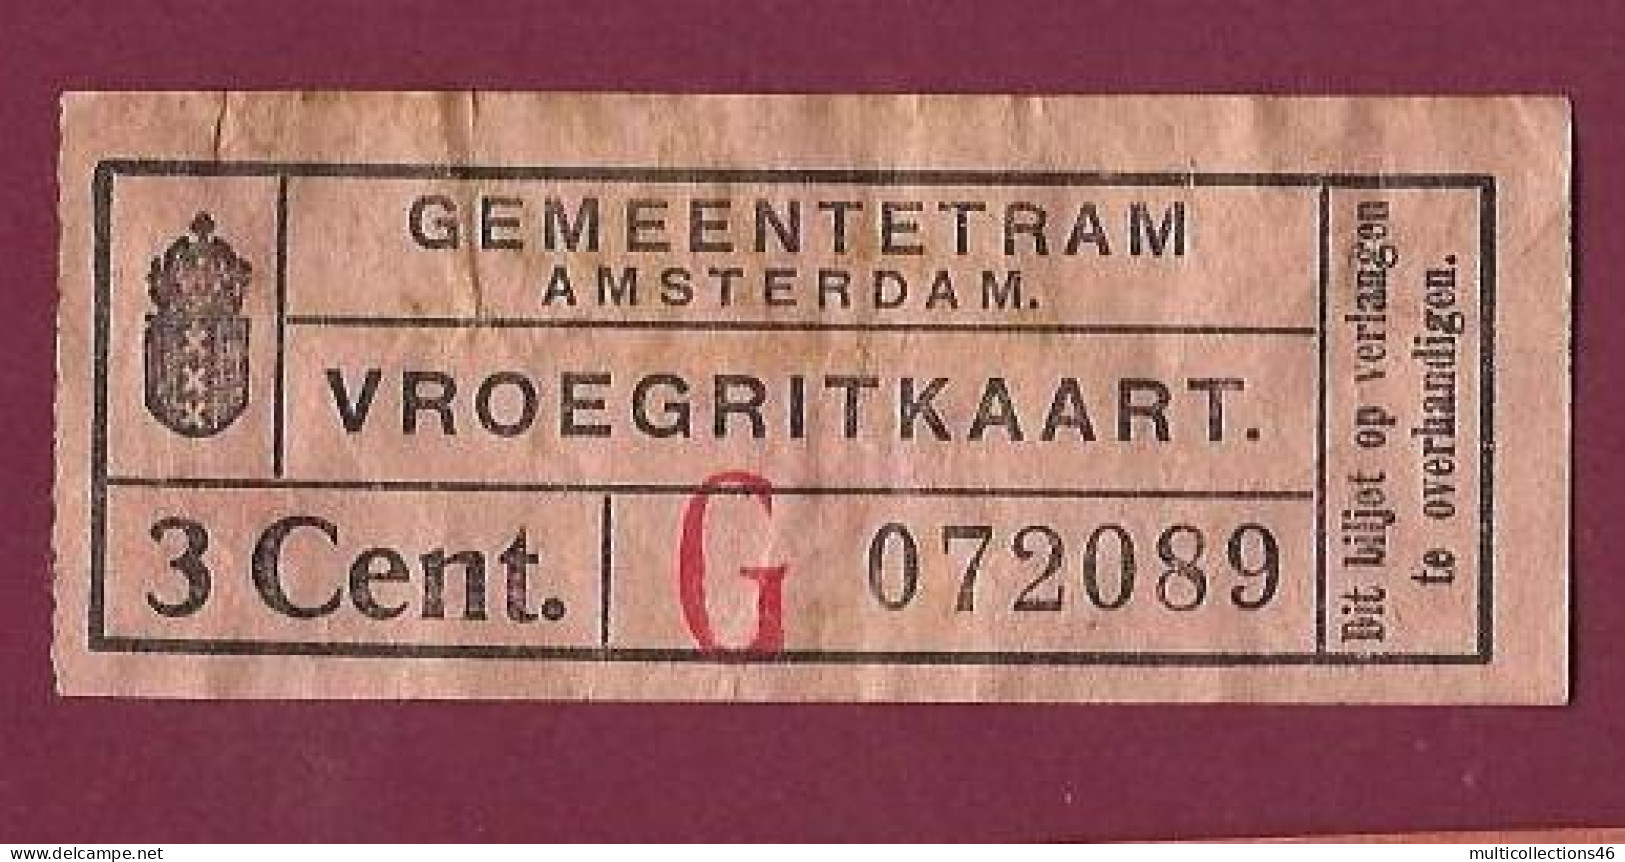 301223 - TICKET CHEMIN DE FER TRAM METRO - PAYS BAS HOLLANDE GEMEENTETRAM AMSTERDAM G 3 Cent. 072089 - Europa